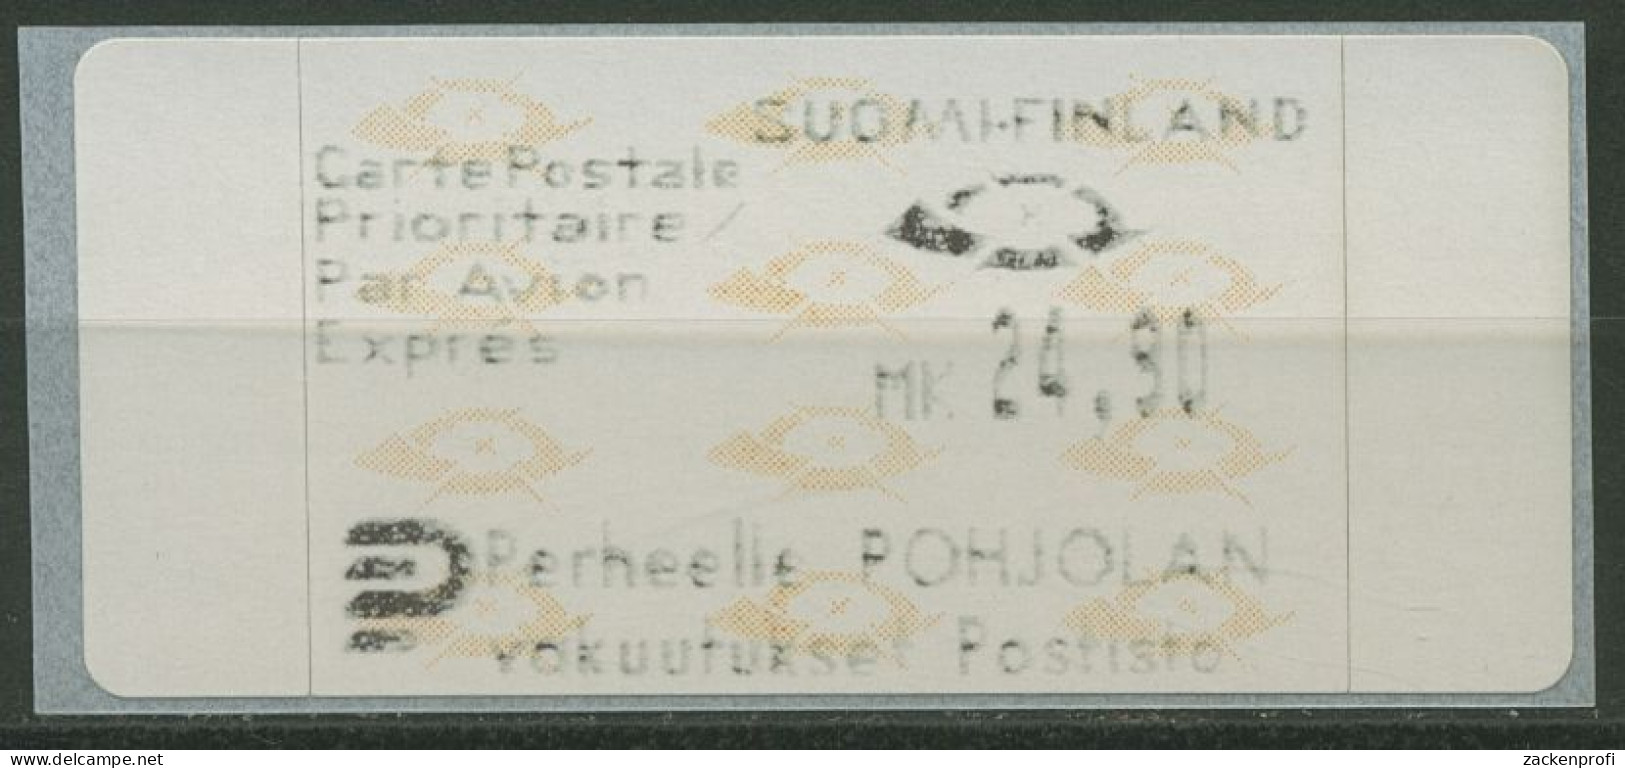 Finnland Automatenmarken 1992 Posthörner Einzelwert ATM 12.3 Z4 Postfrisch - Automatenmarken [ATM]